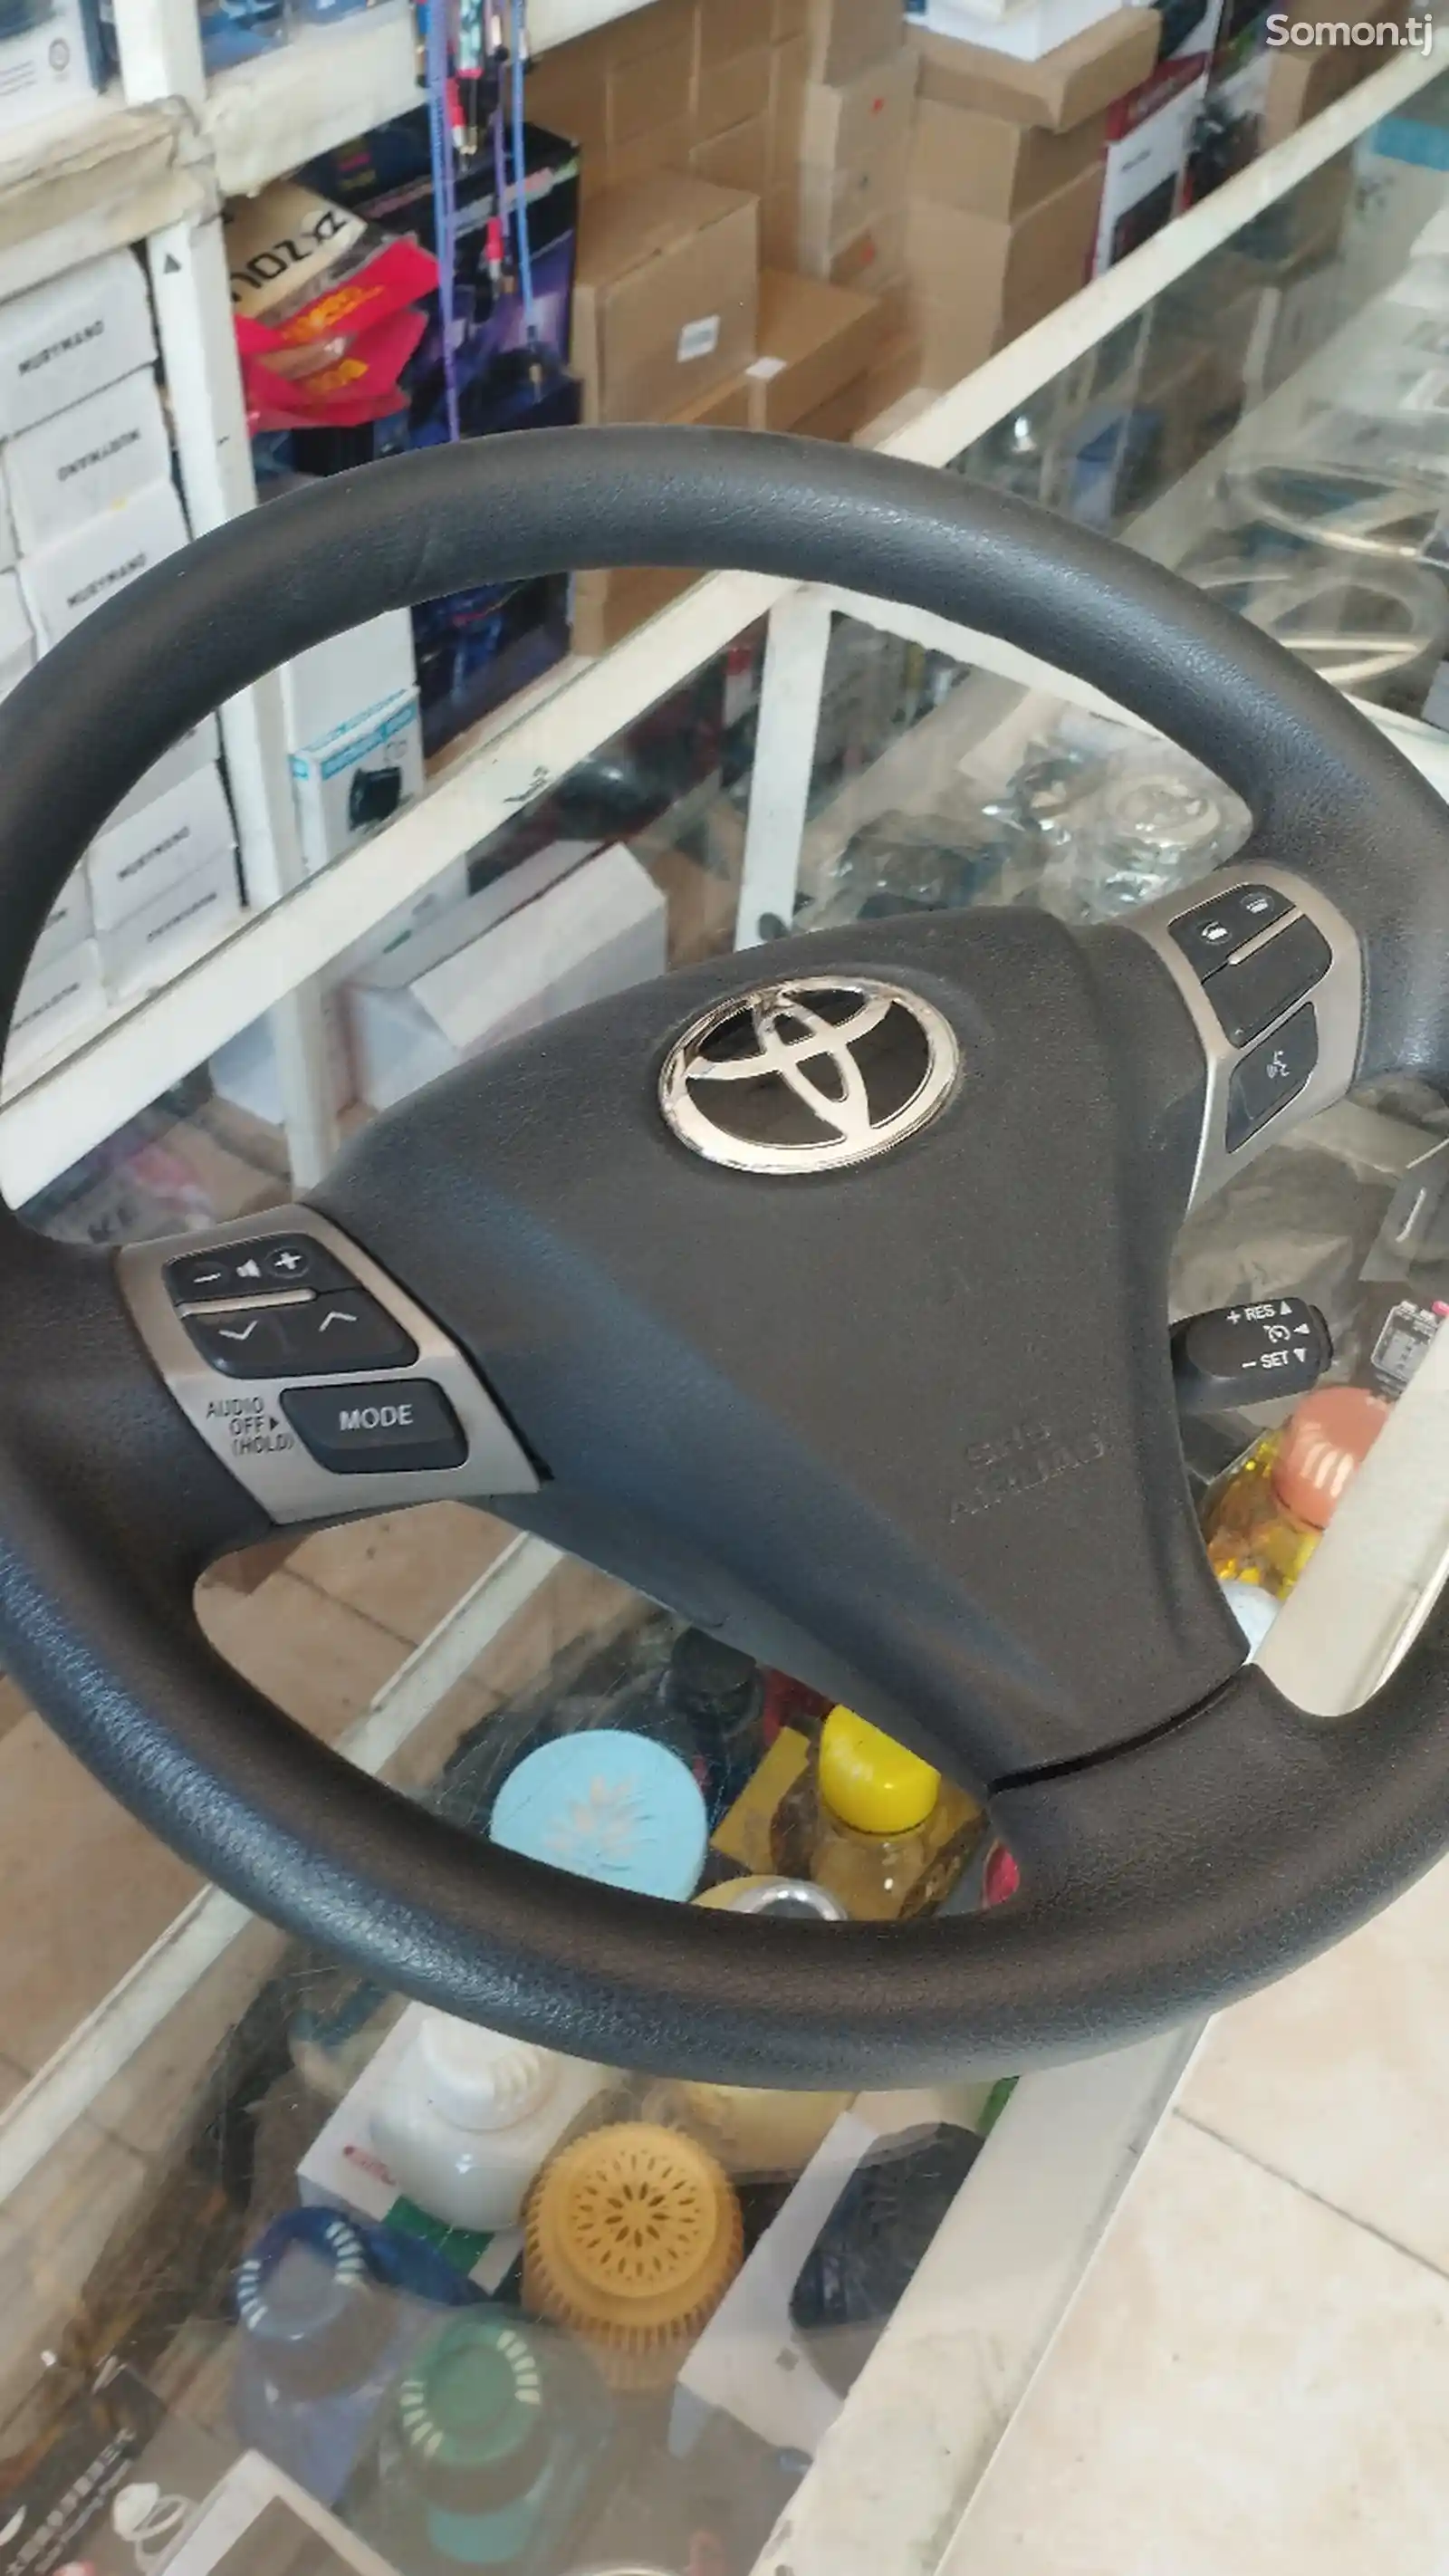 Штаны руля на Toyota-2